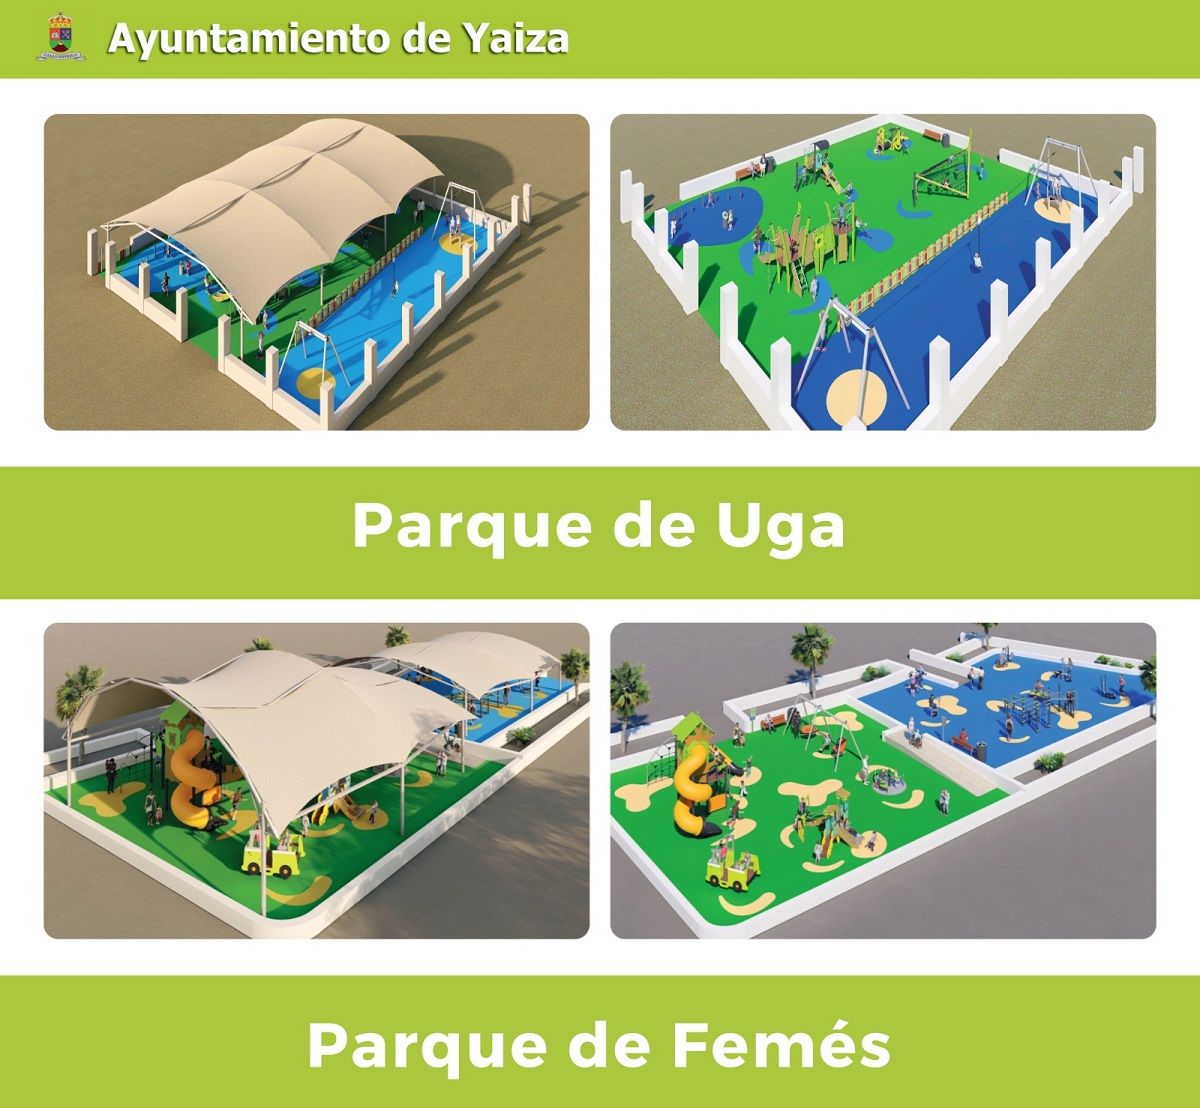 Infografía del Parque de Uga y de Femés